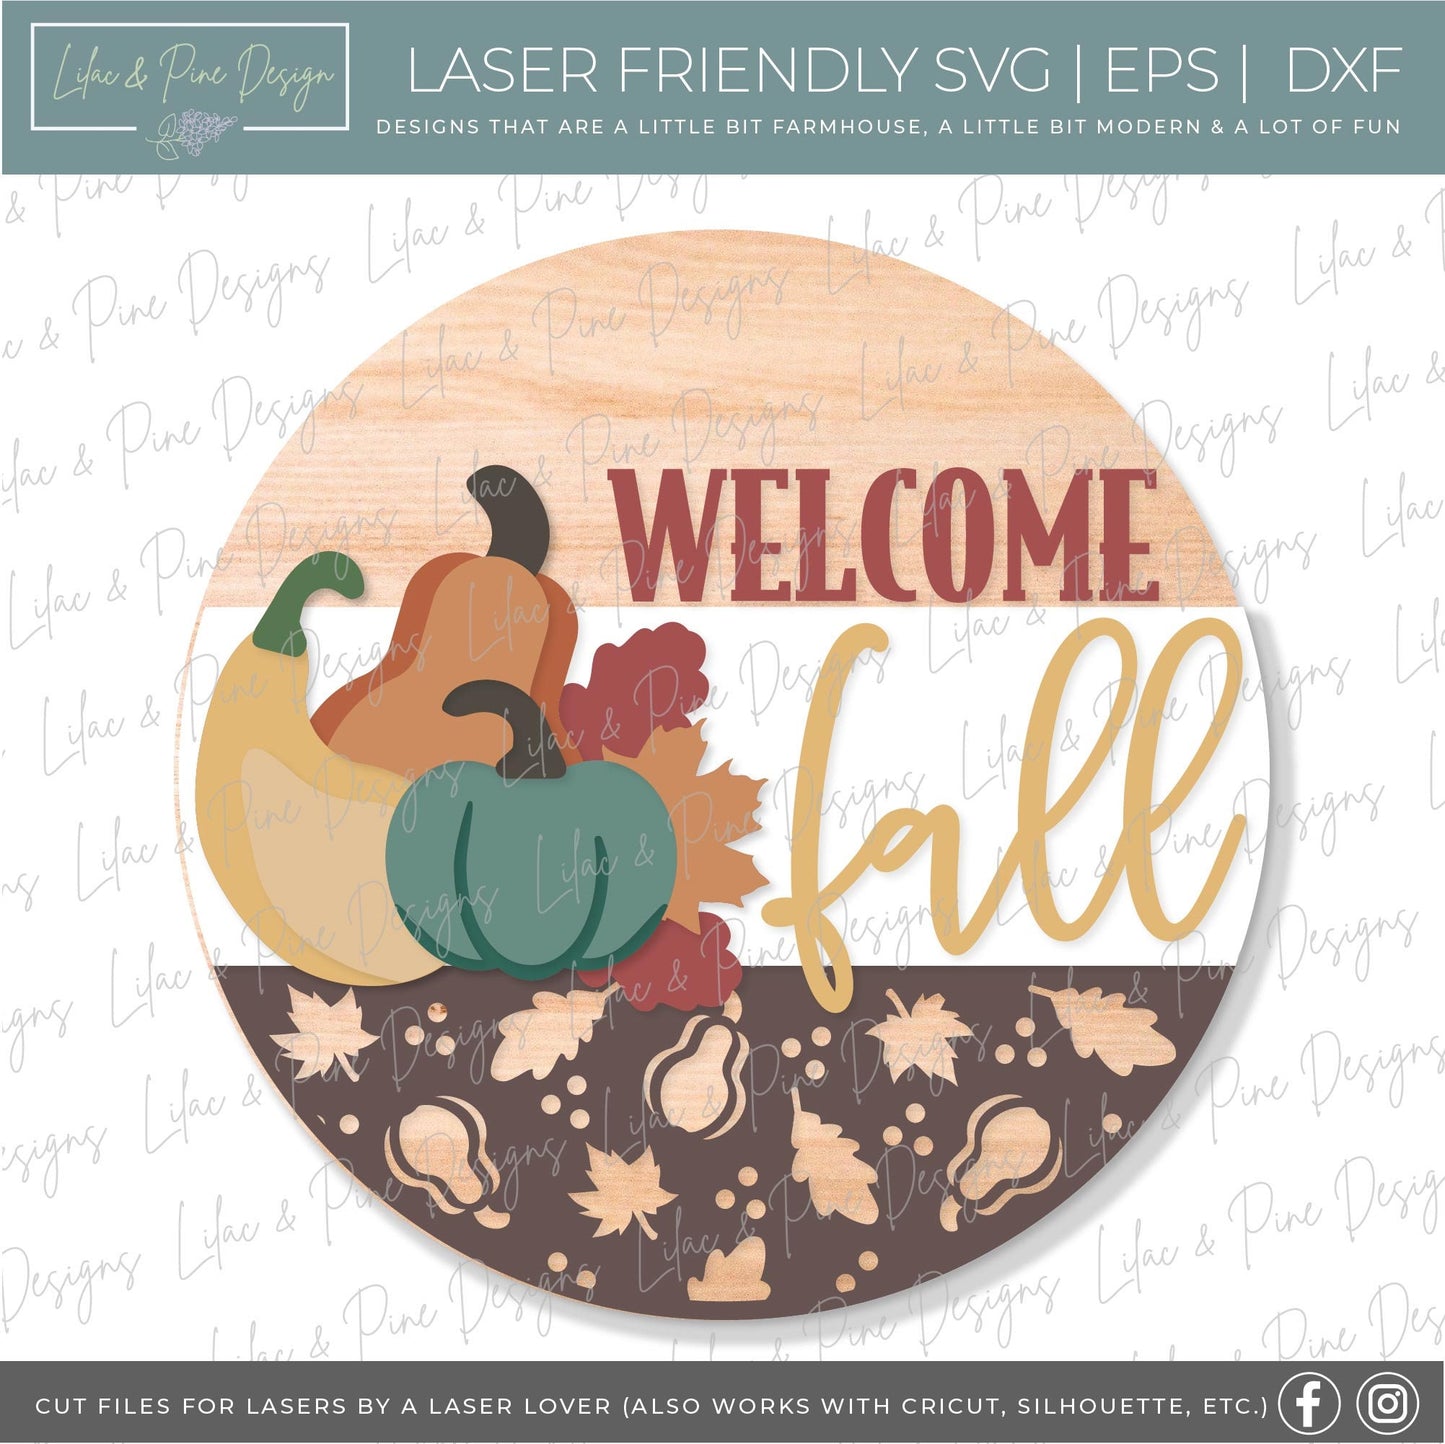 Welcome fall door hanger SVG, Gourd door hanger, Pumpkin welcome sign SVG, gourd welcome sign svg, fall decor, Glowforge SVG, laser cut file